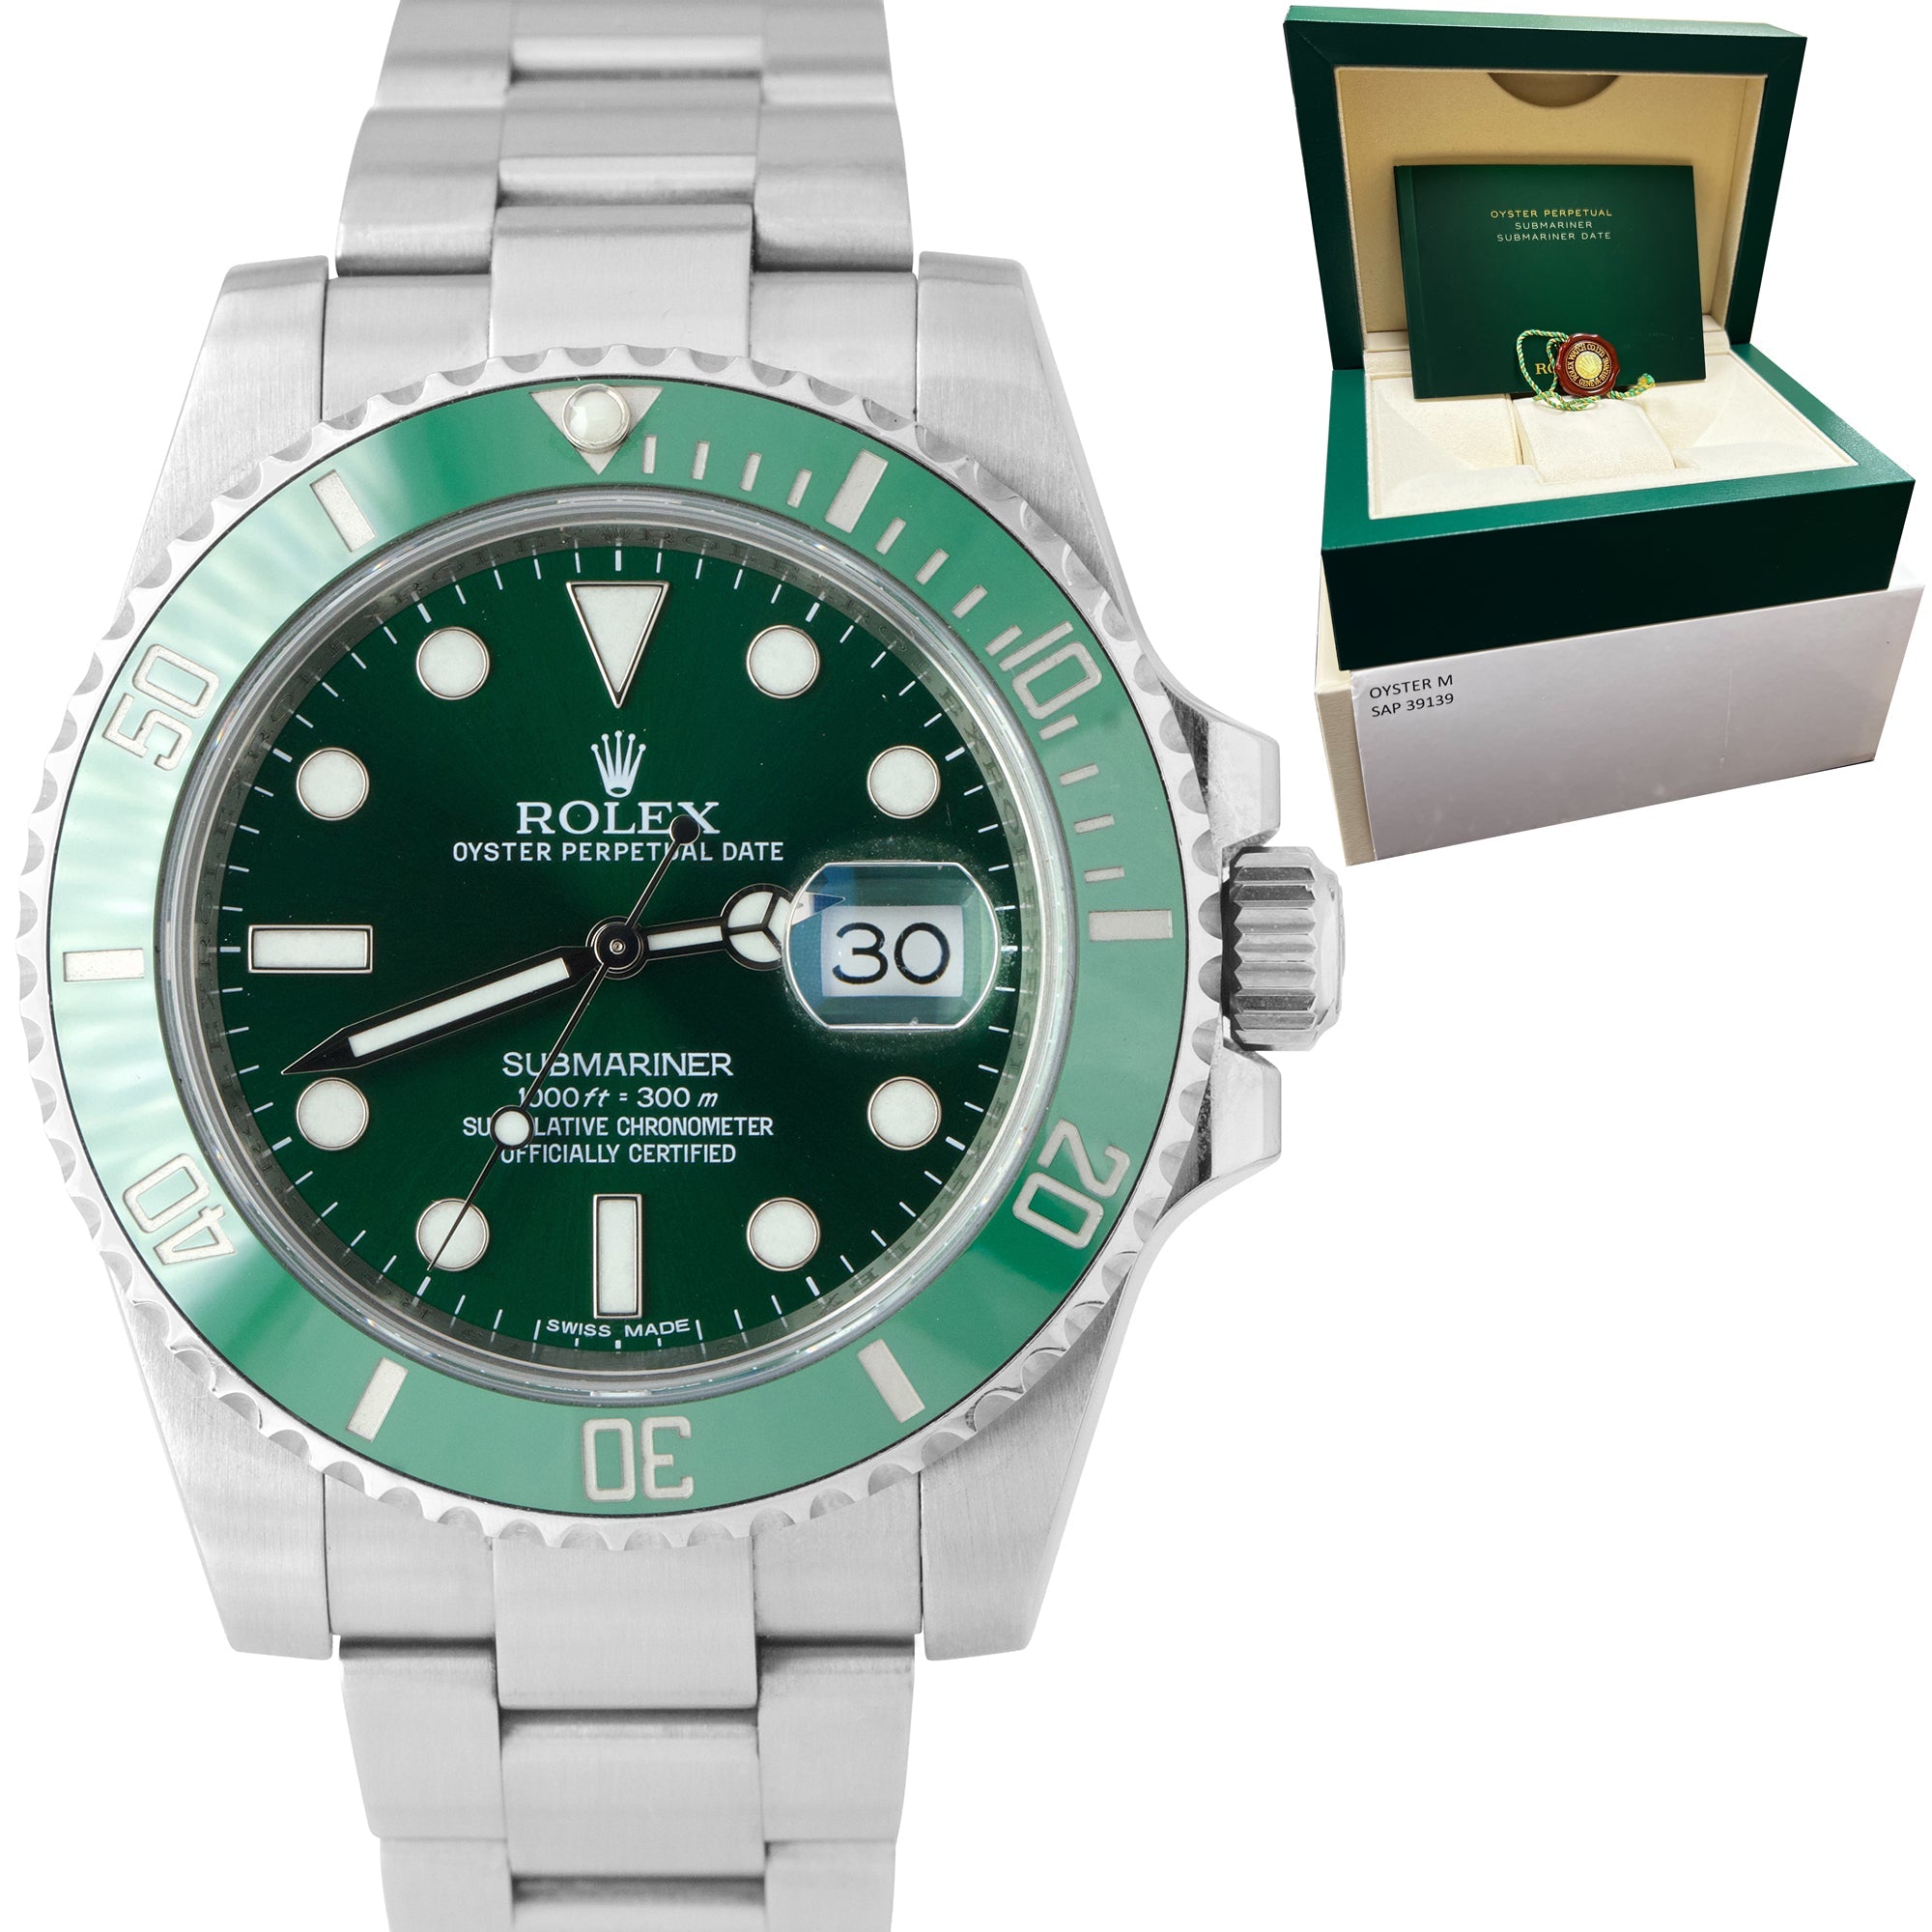 Rolex Submariner Date Hulk Stainless Steel Green Ceramic 40mm Watch 116610 LV